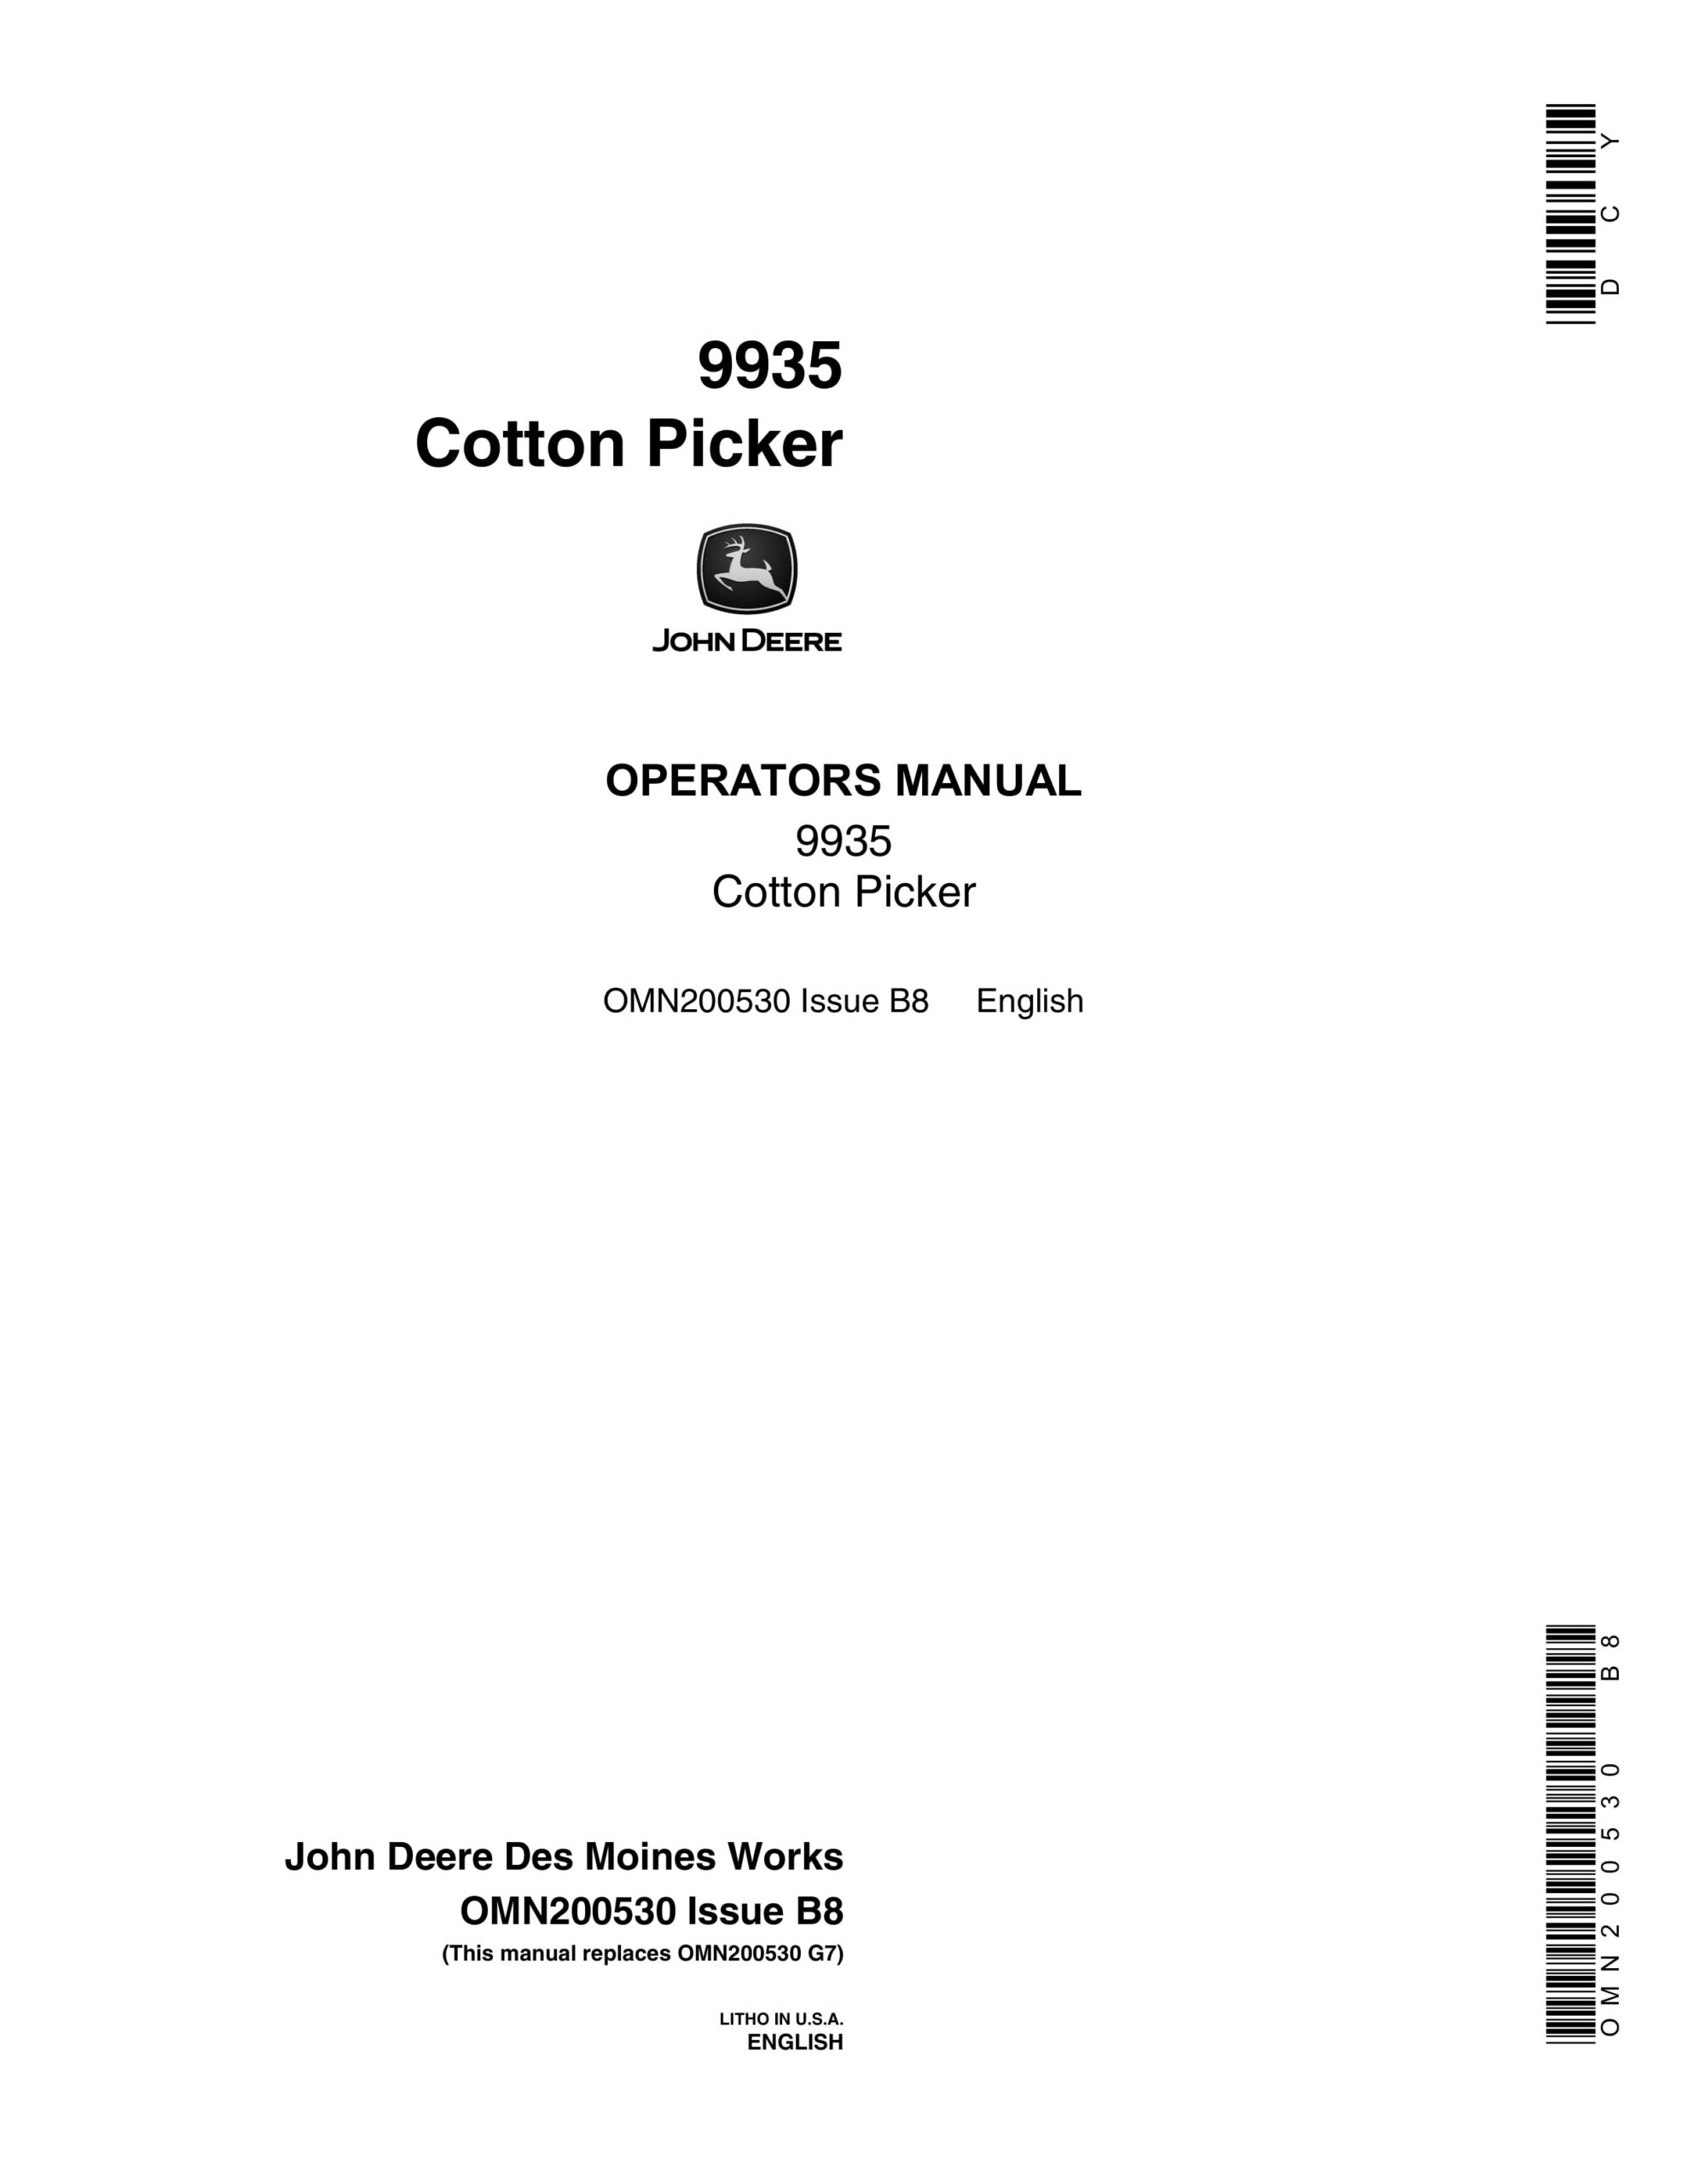 John Deere 9935 COTTON PICKER Operator Manual OMN200530-1